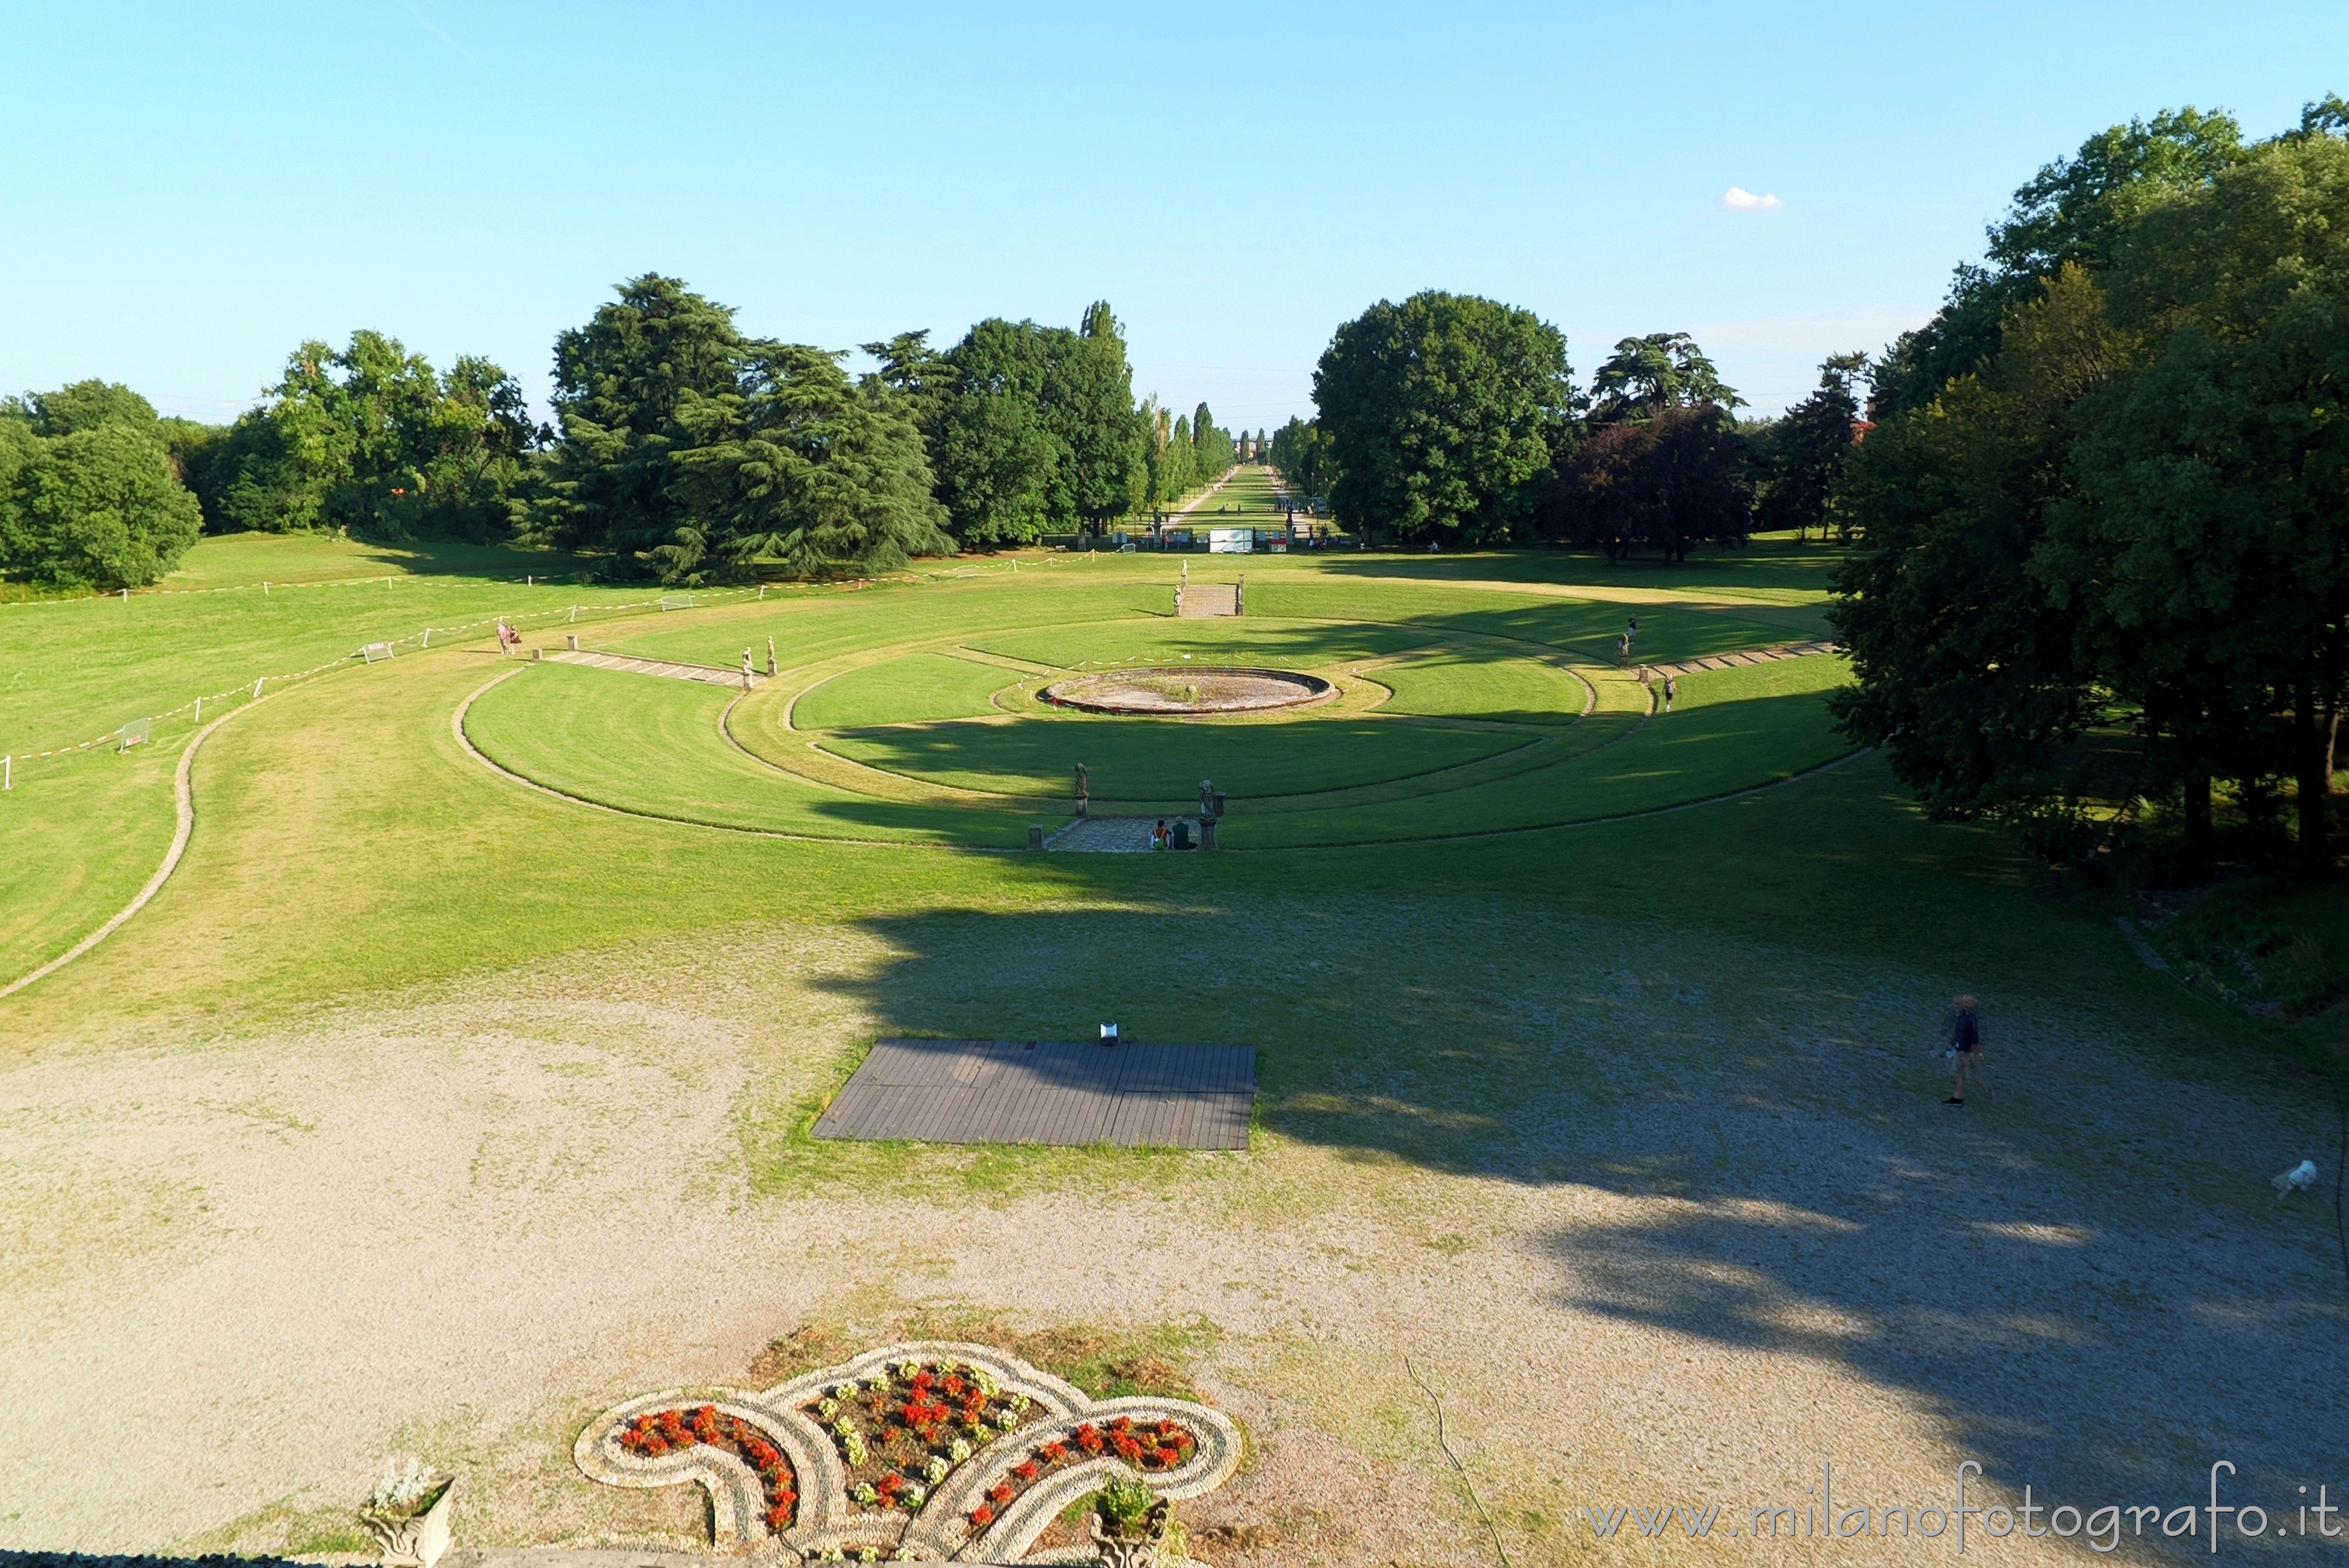 Varedo (Monza e Brianza): Villa Bagatti Valsecchi vista dal parco - Varedo (Monza e Brianza)